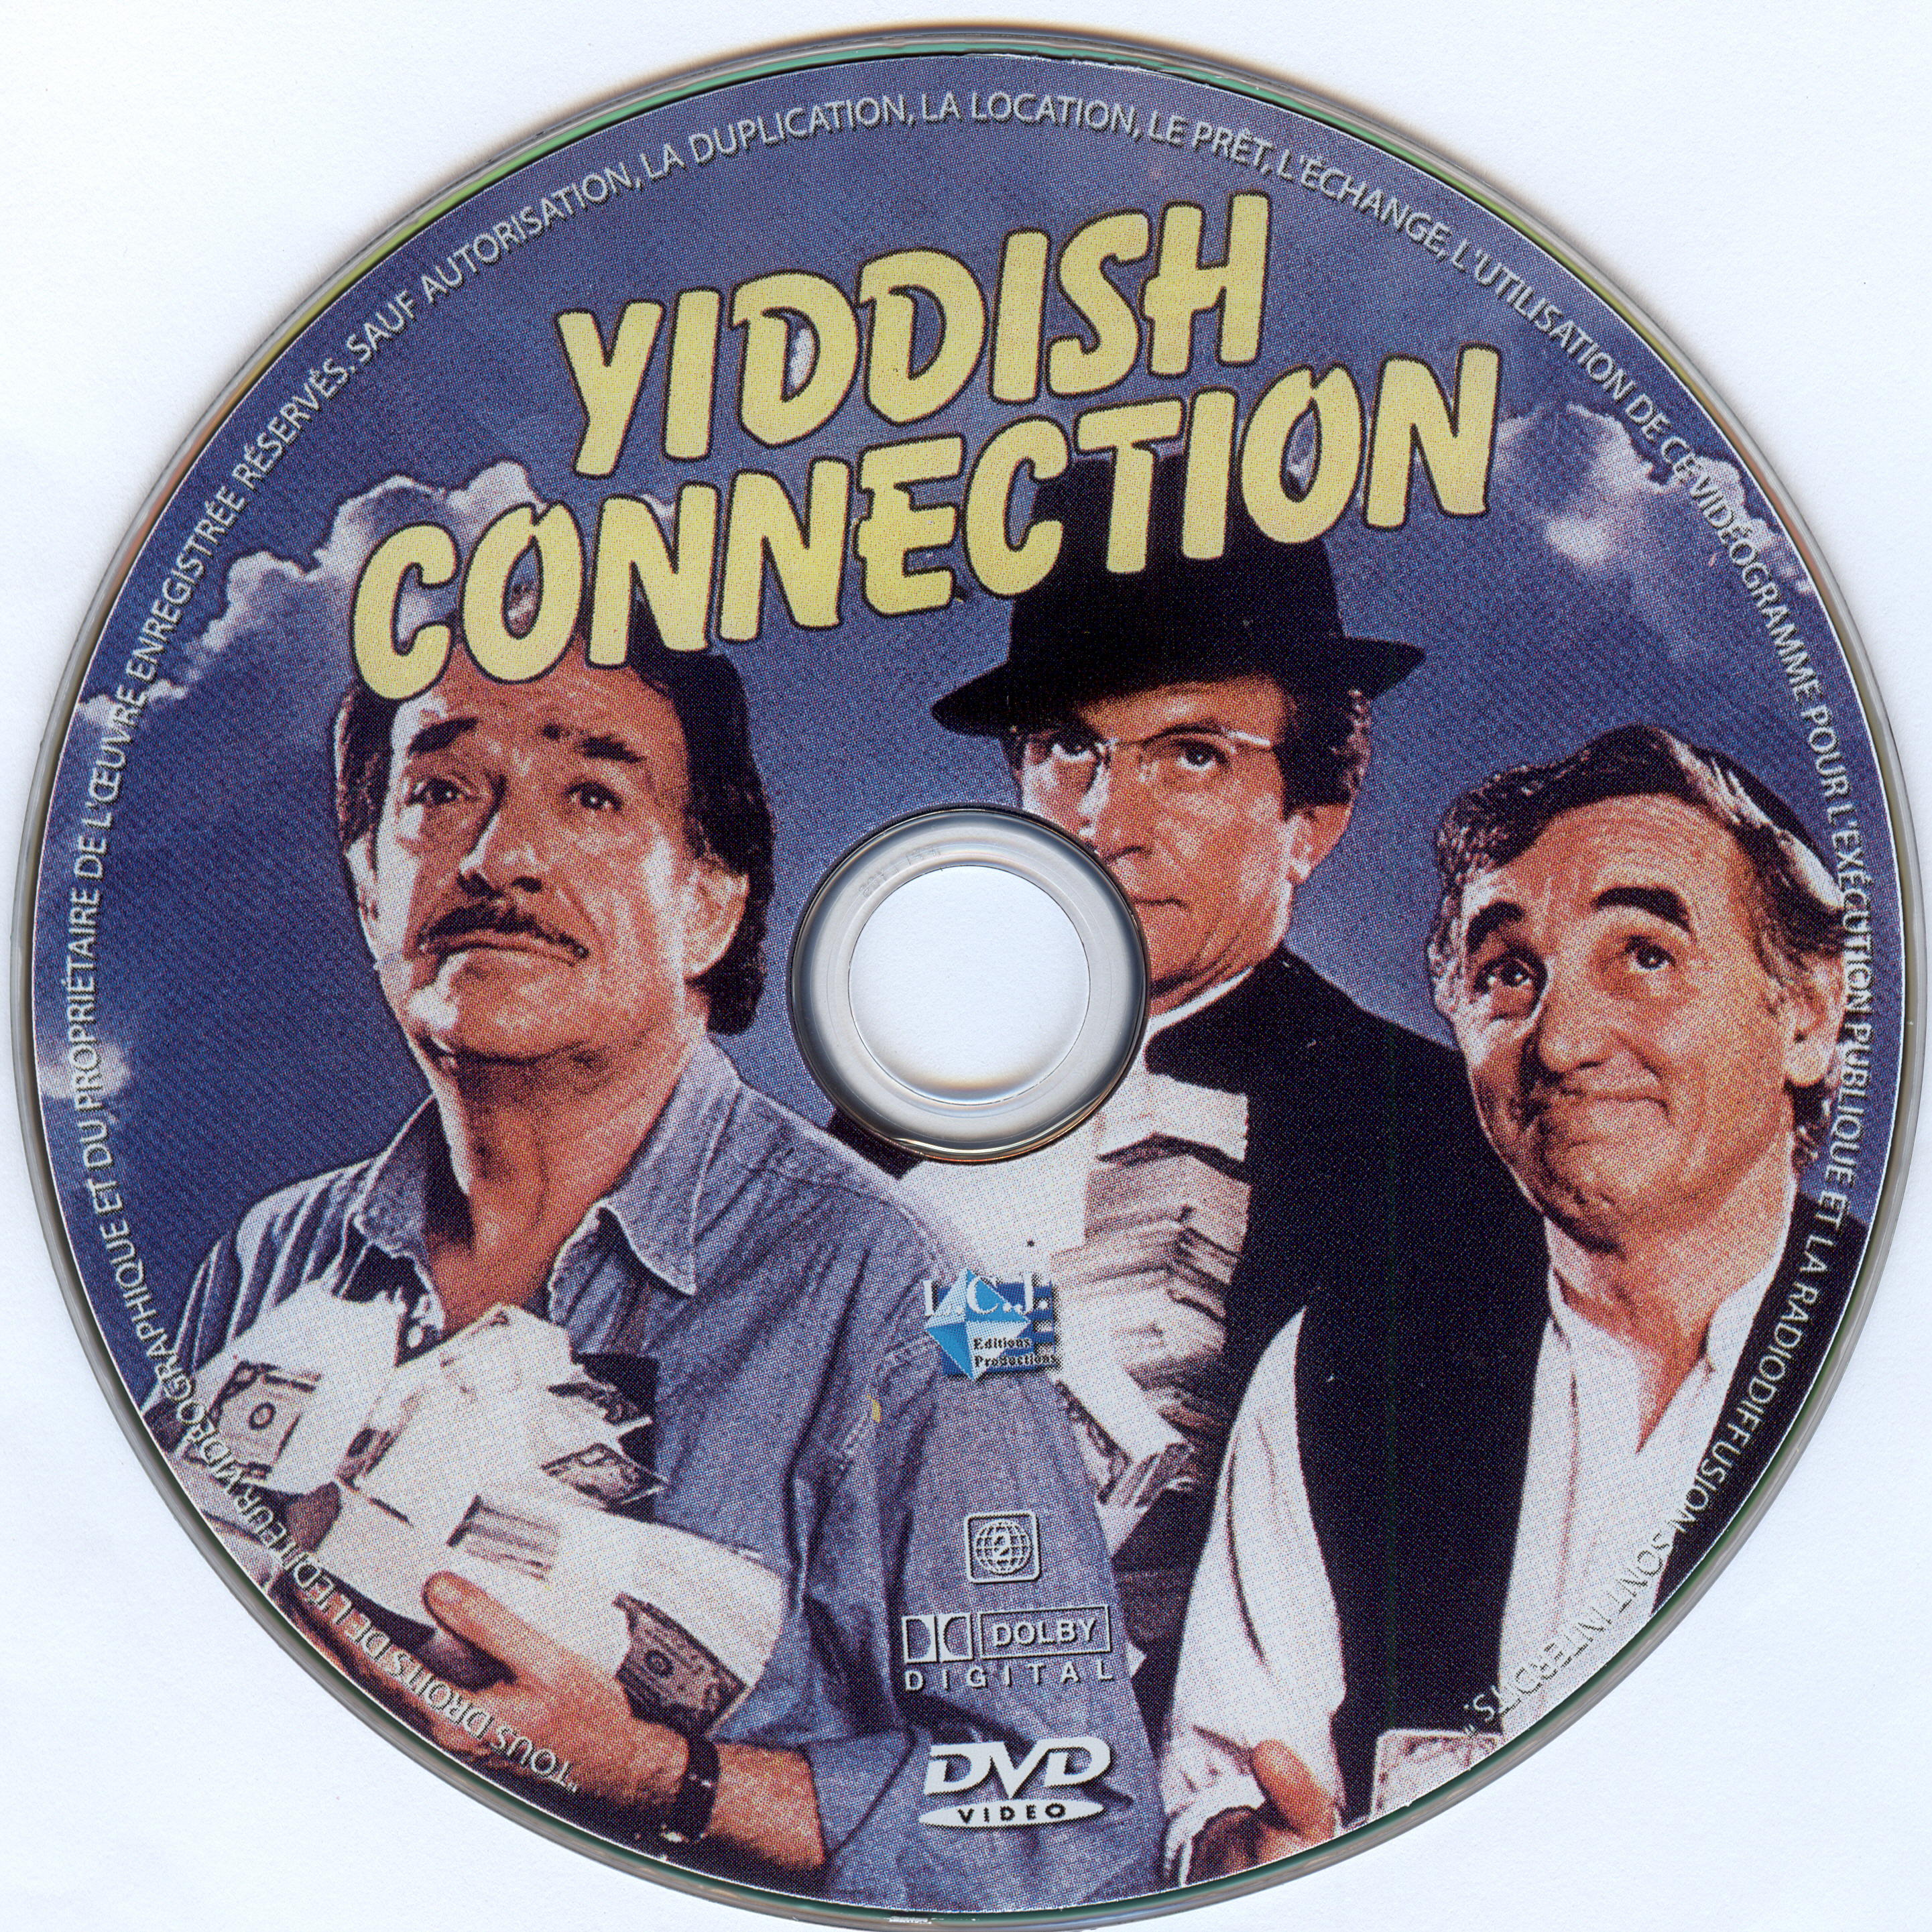 Yiddish connection